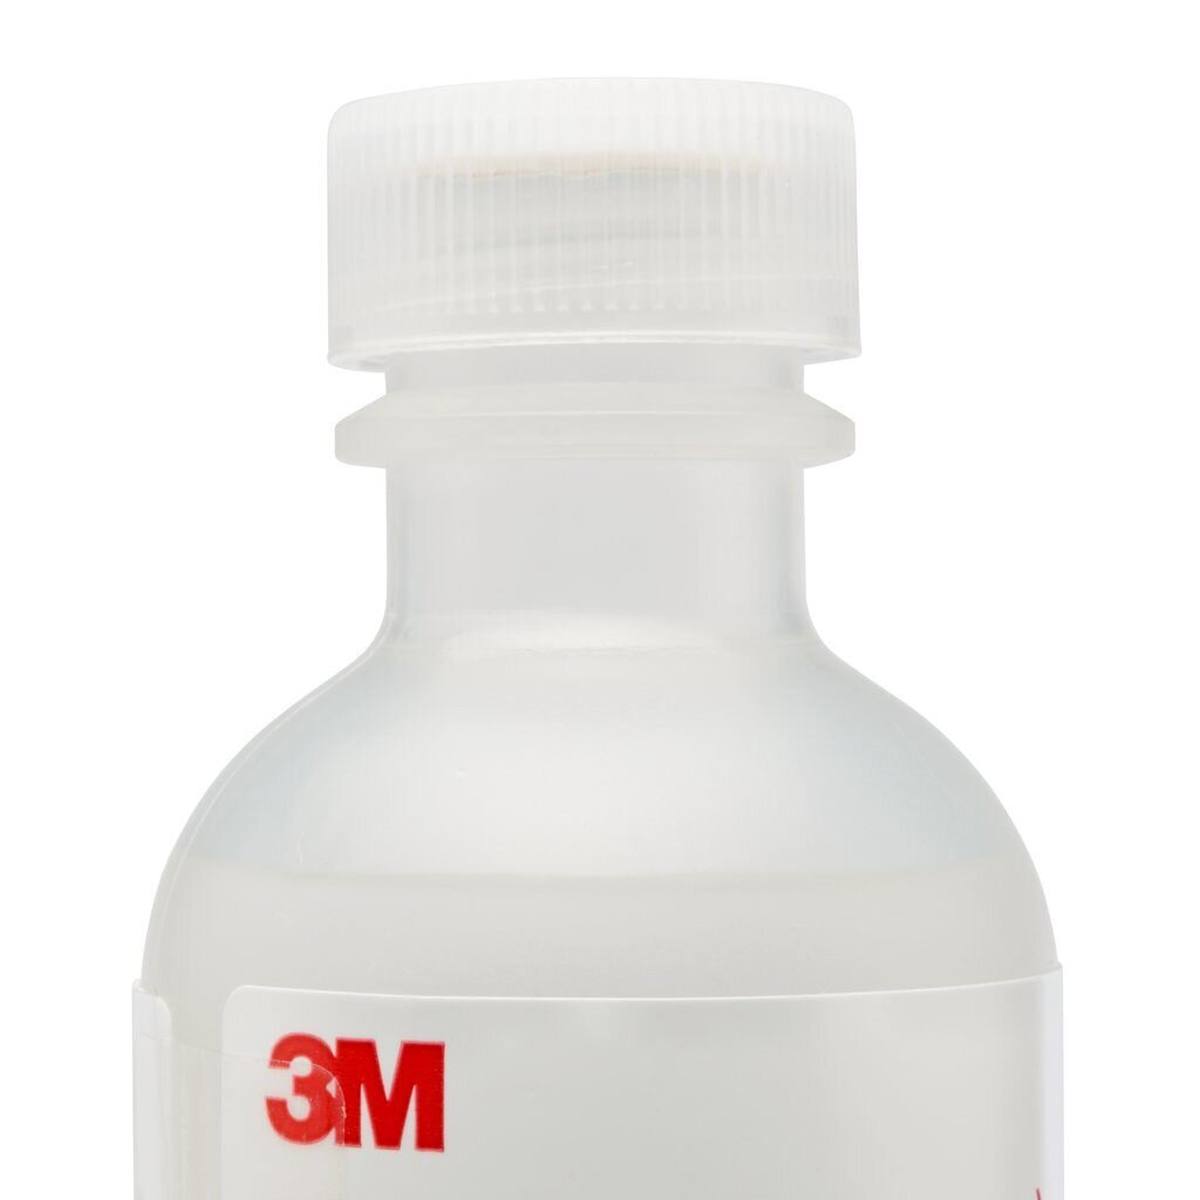 3M FT-31 Fit Test Sensitivity Lösung, Flaschen a 55ml, bitter (Pack=6Stück)